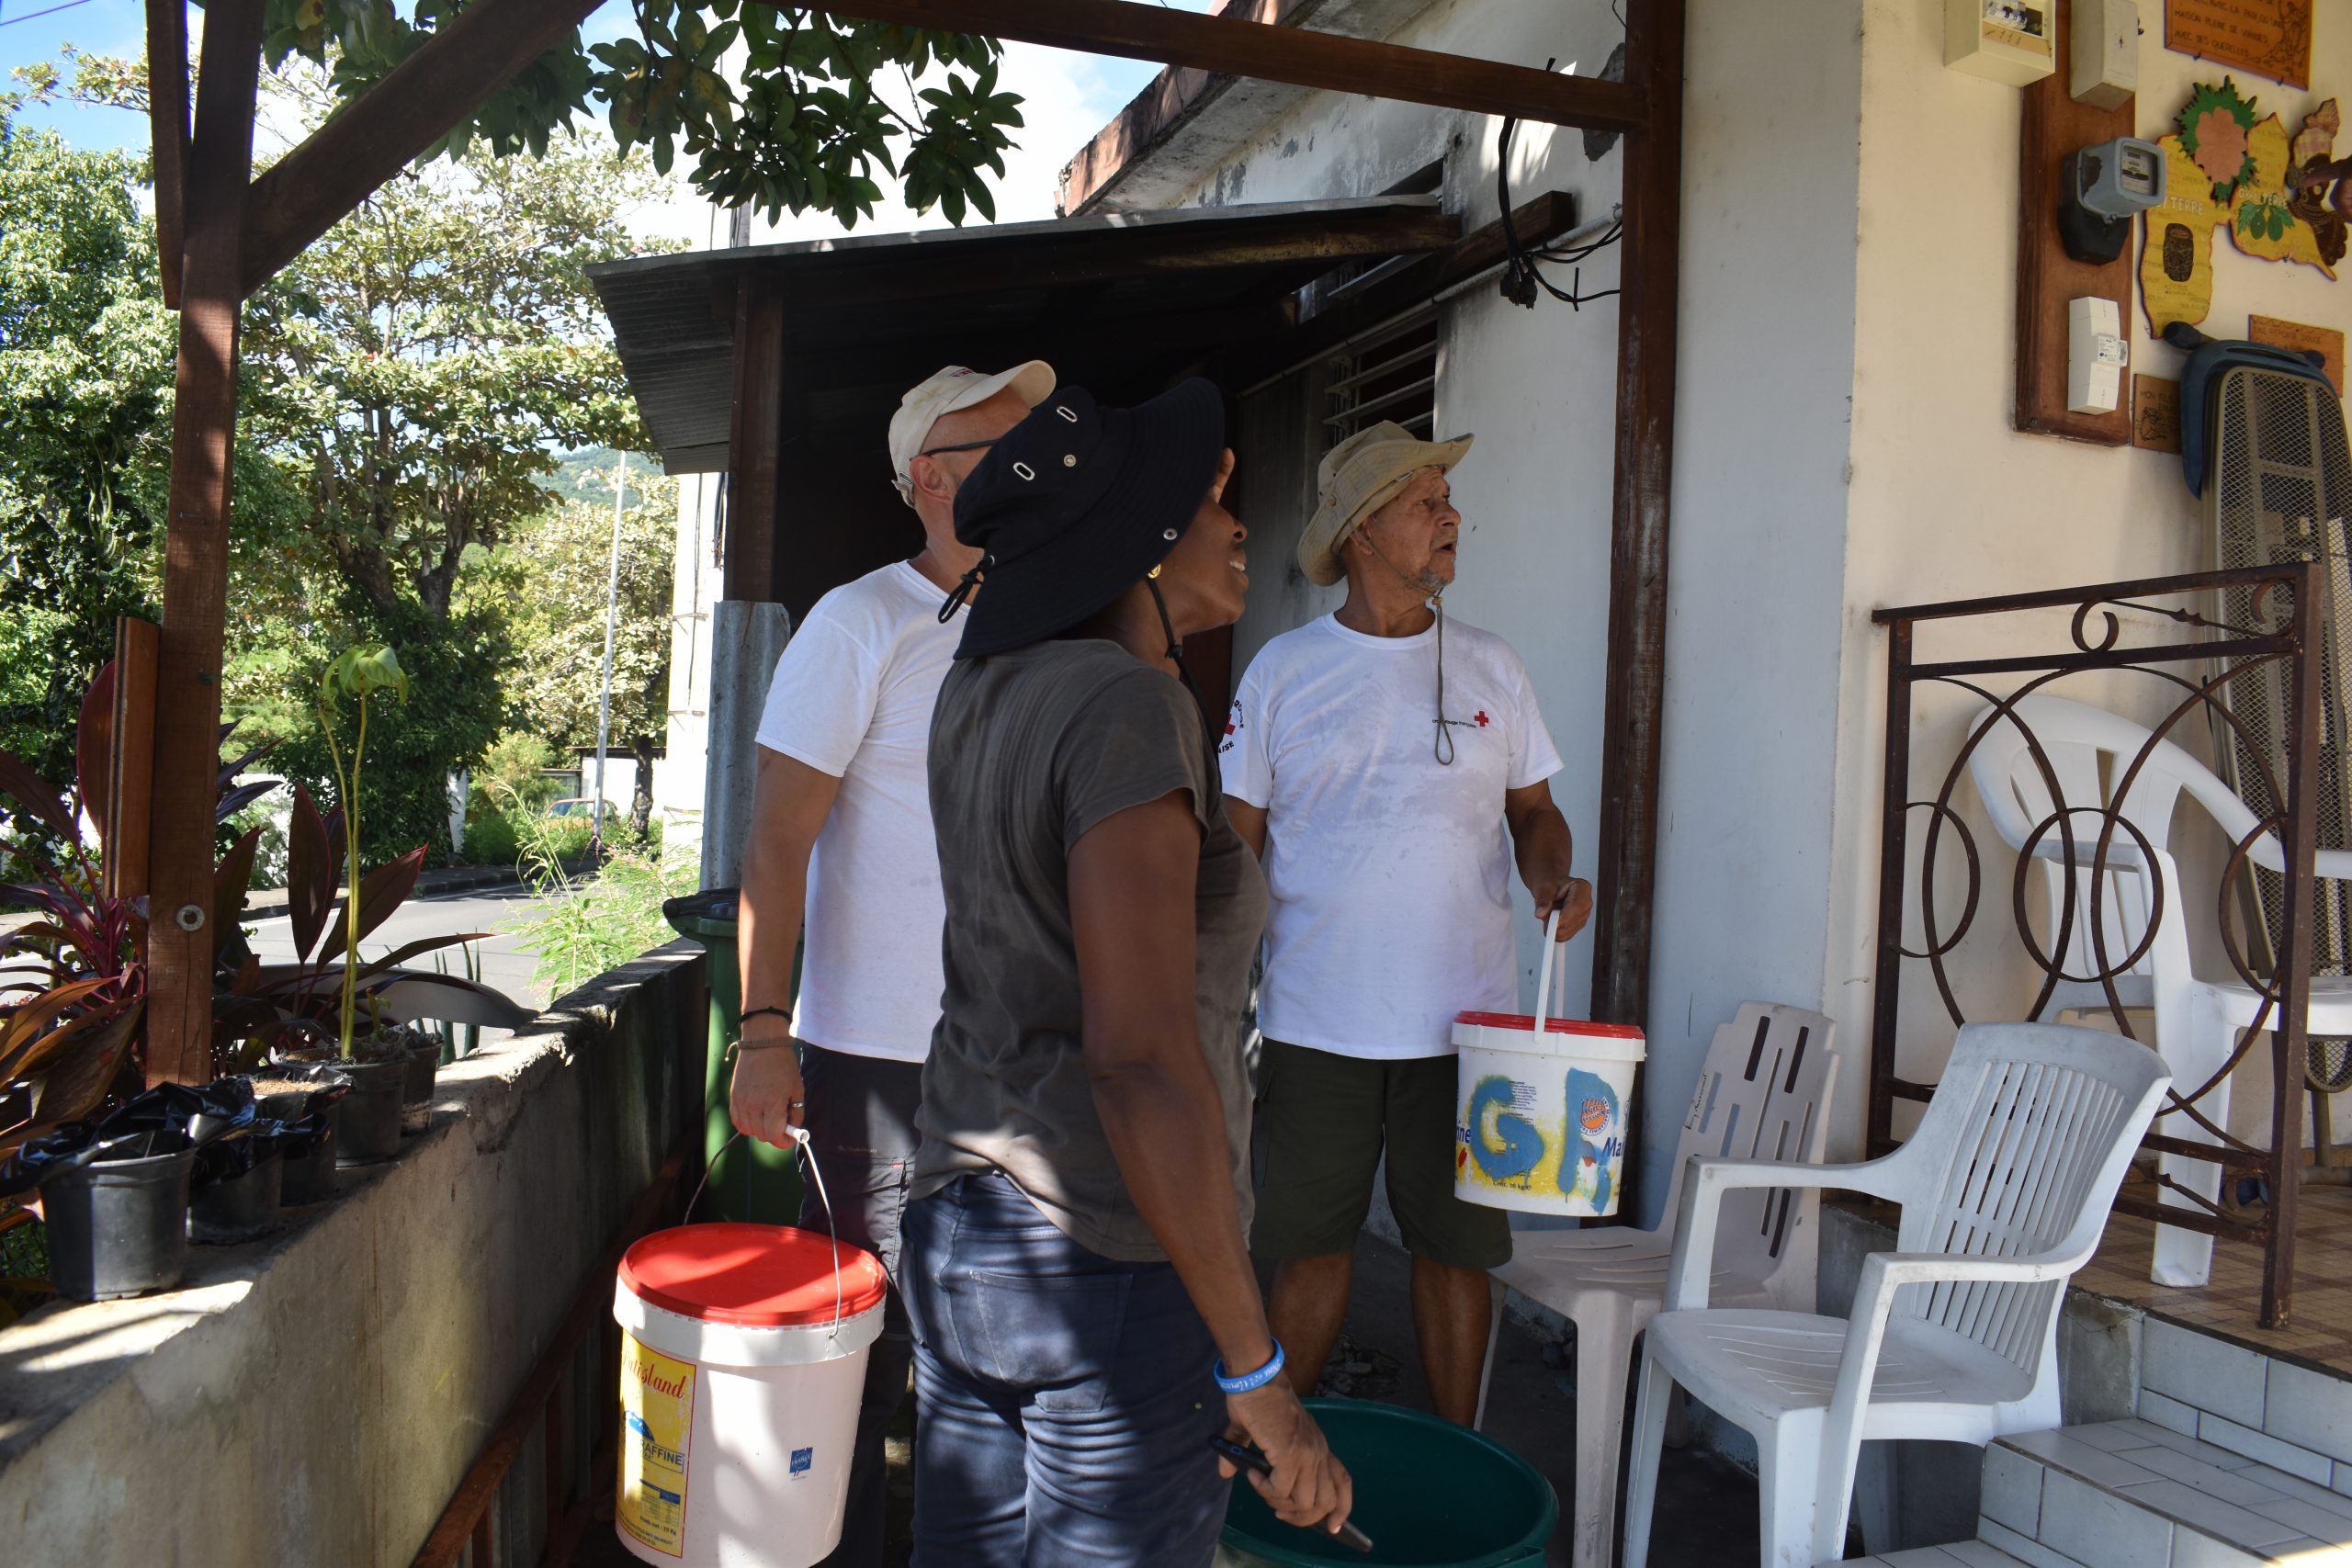 Livraison d'eau sanitaire à des habitants de Vieux-Habitants en Guadeloupe